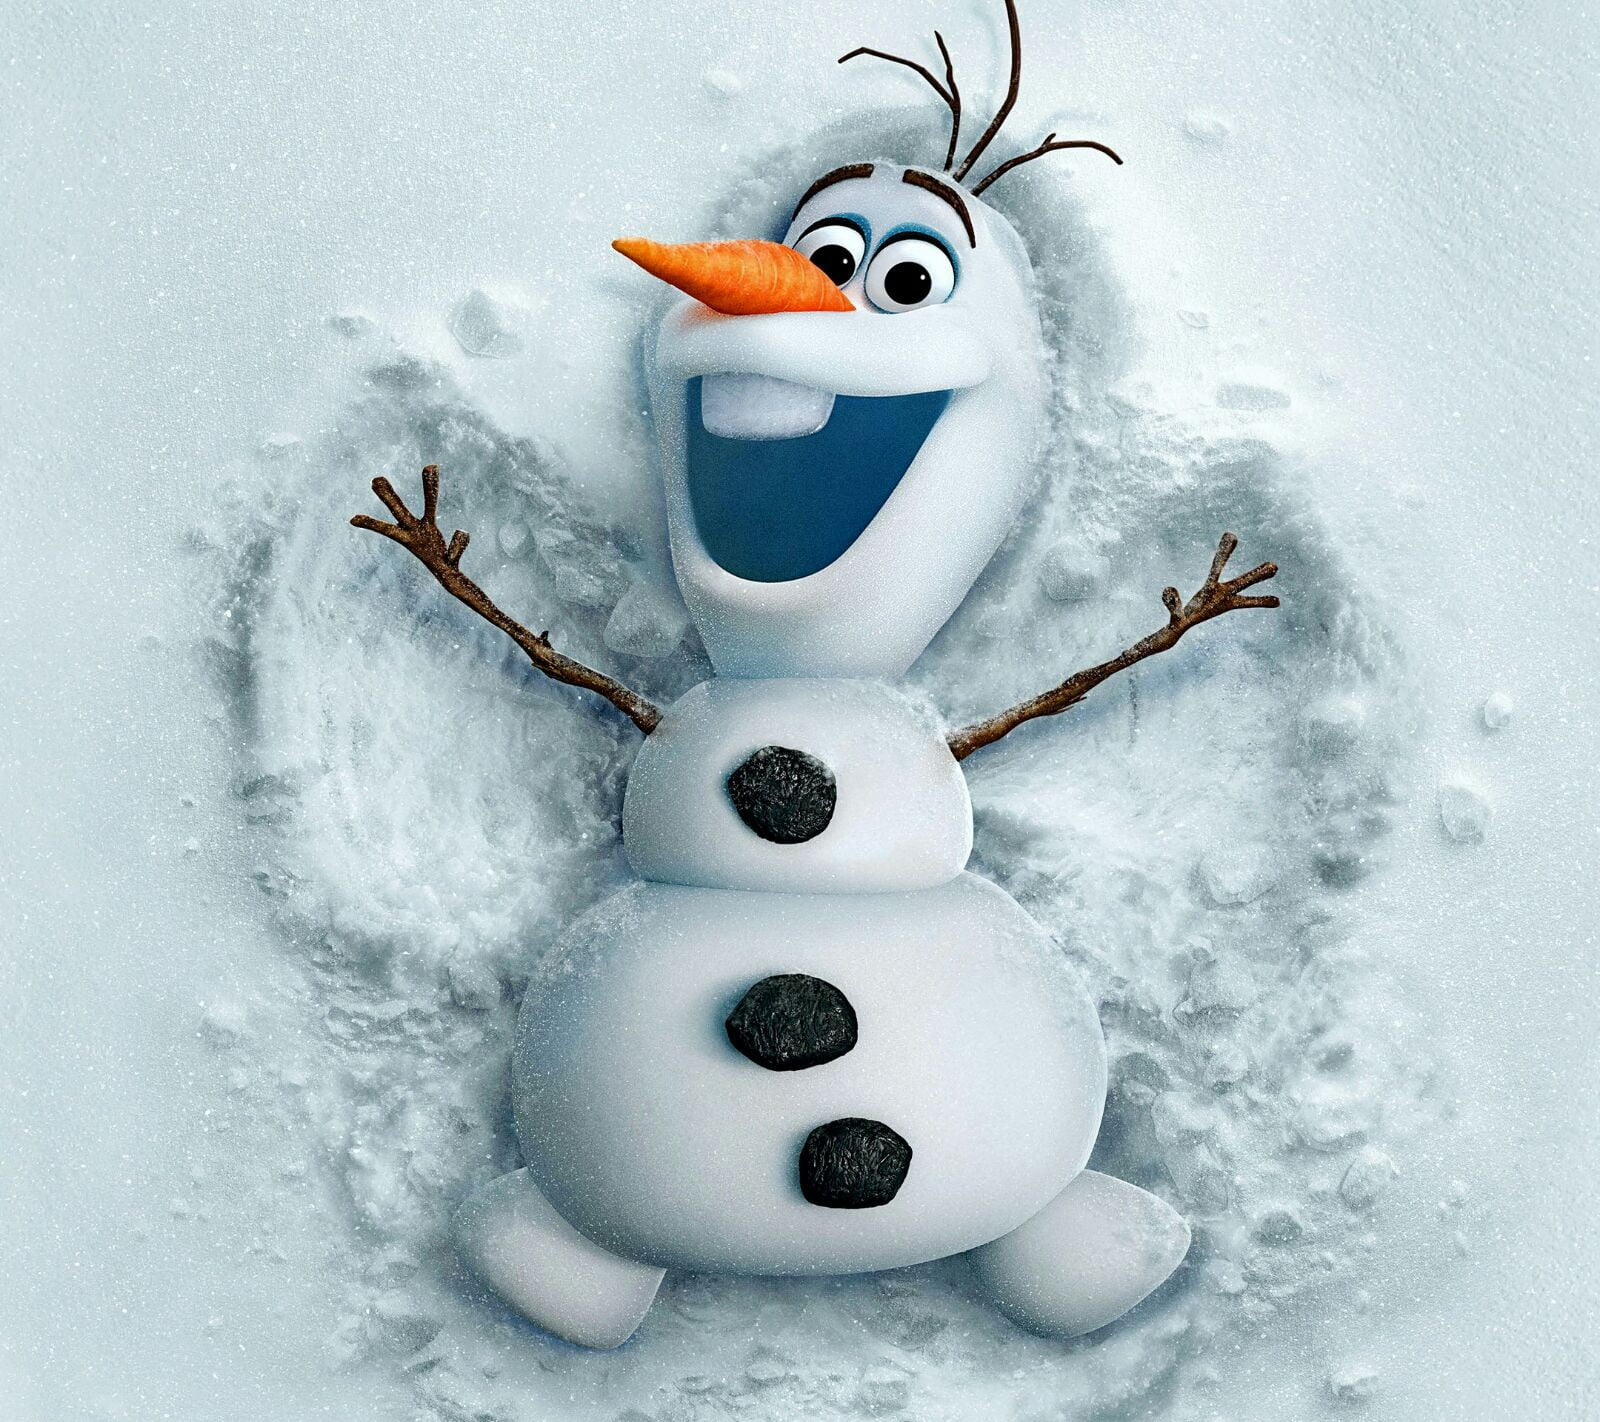 Disney Frozen Olaf digital wallpaper snowman Frozen (movie)